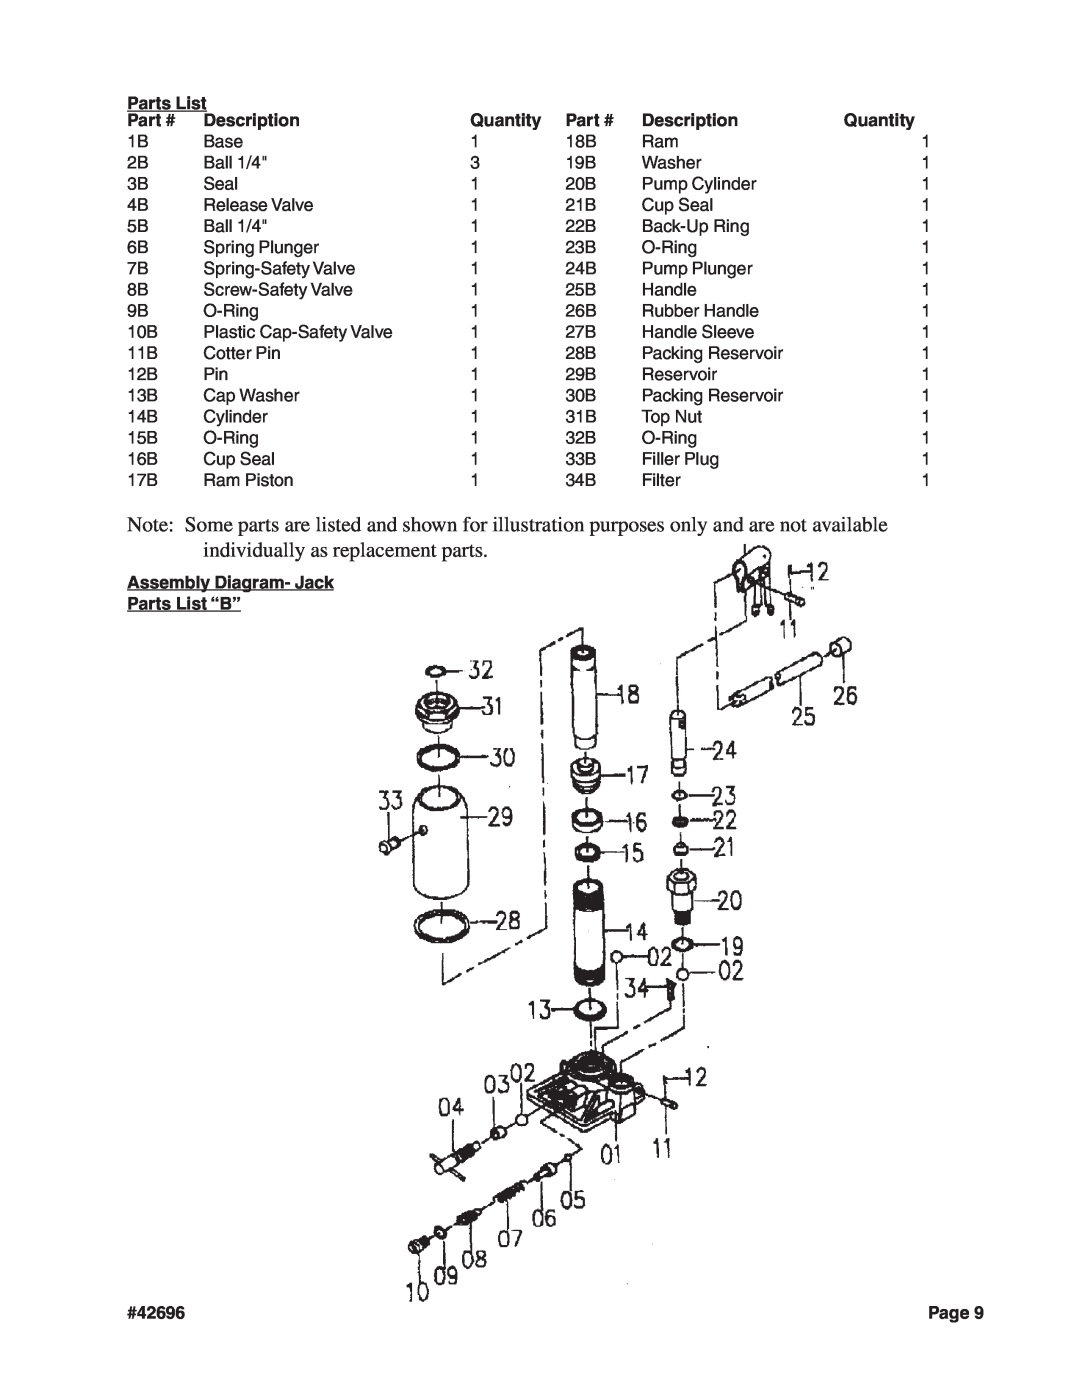 Harbor Freight Tools manual Assembly Diagram- Jack Parts List “B”, Description, Quantity, #42696 